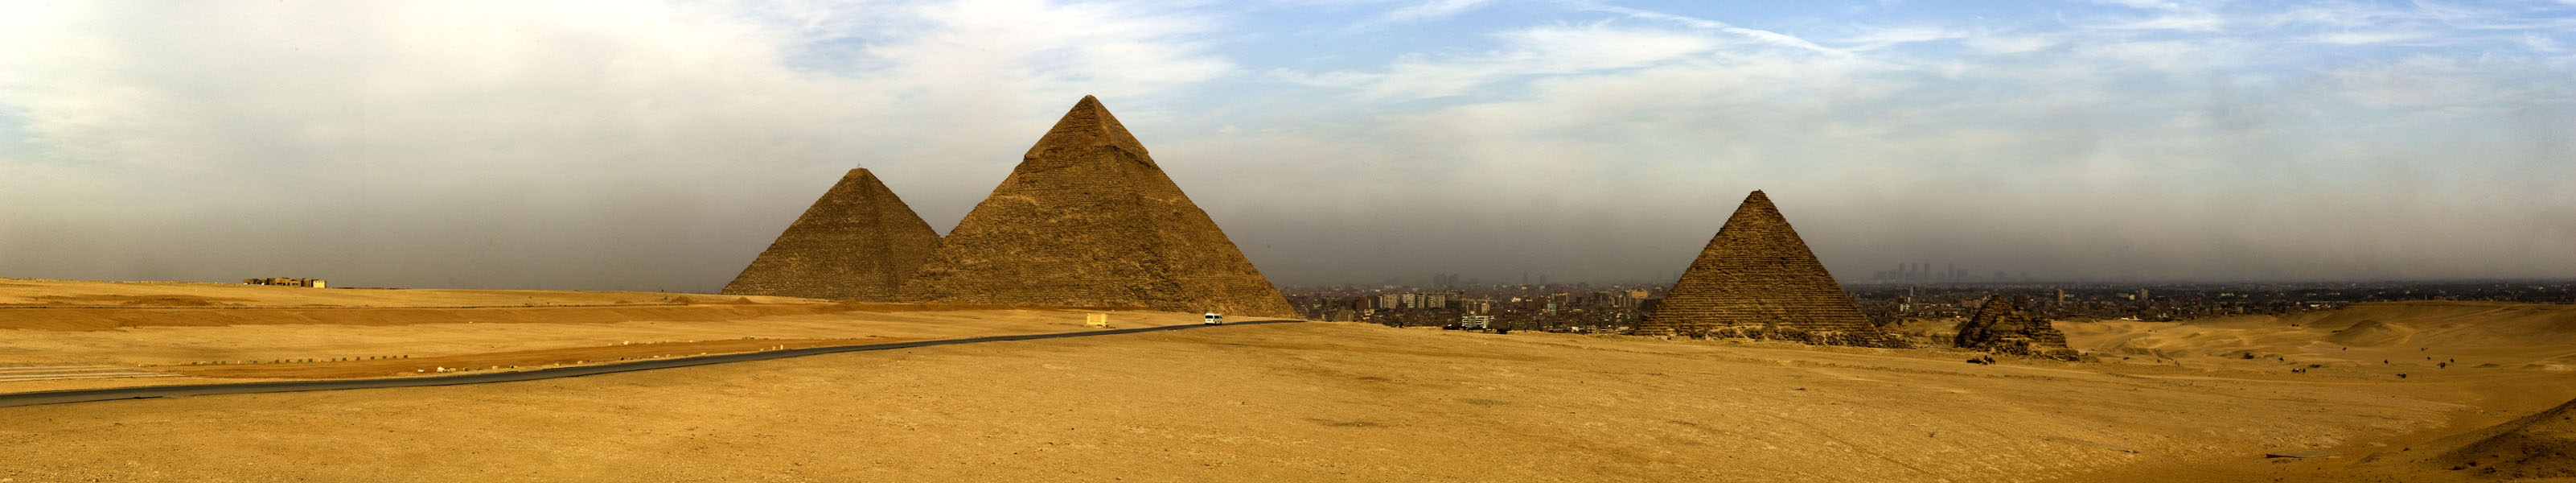 piramidyi